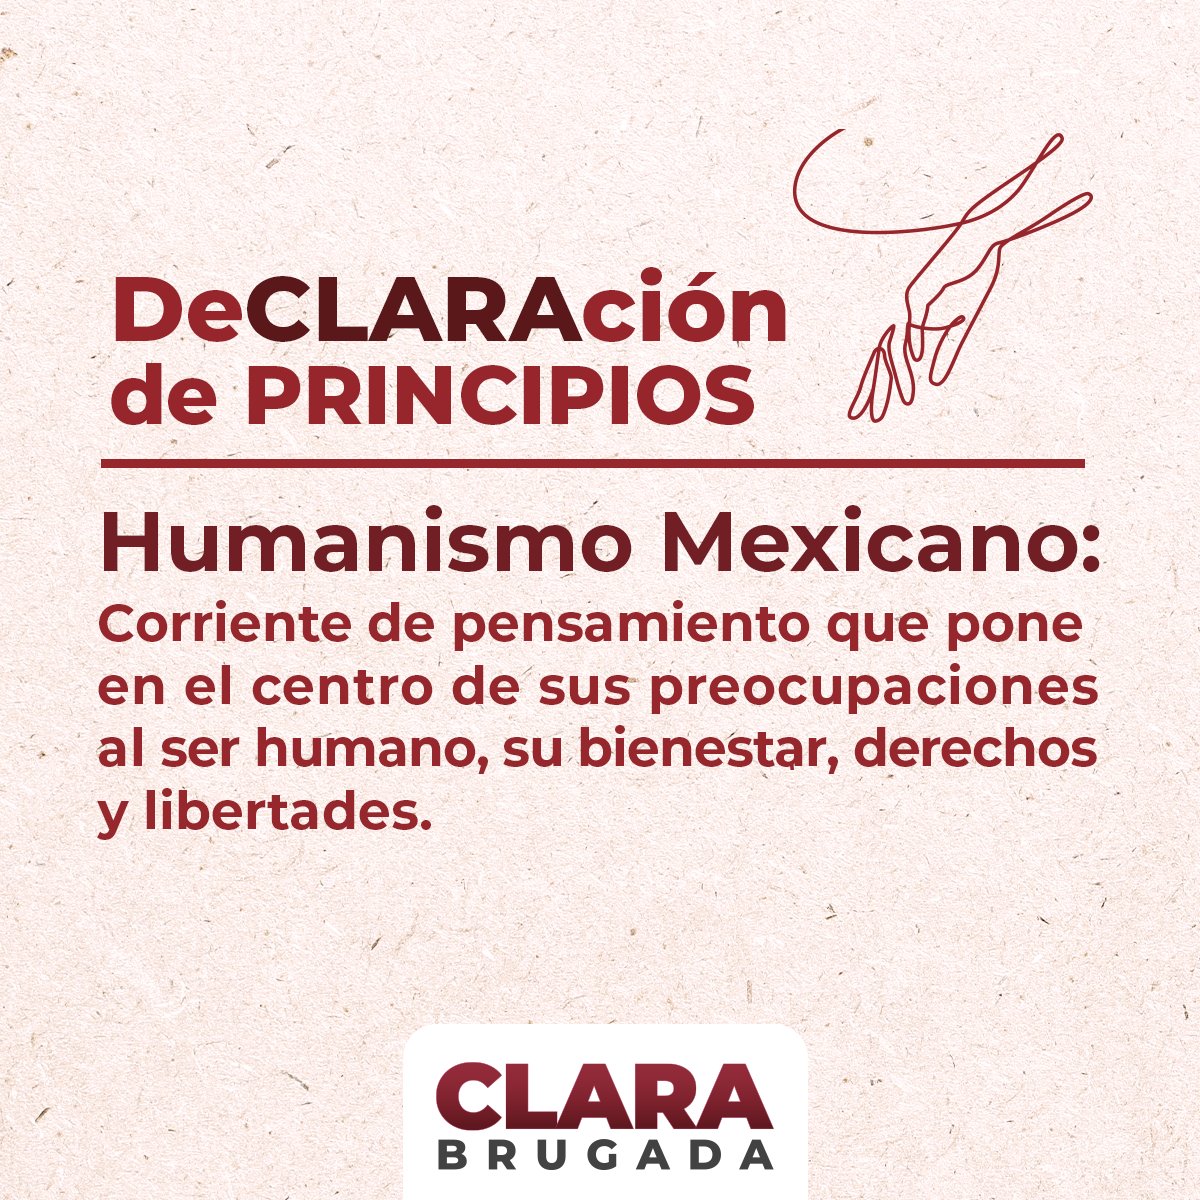 Declaración de principios
#ClaraQueSí